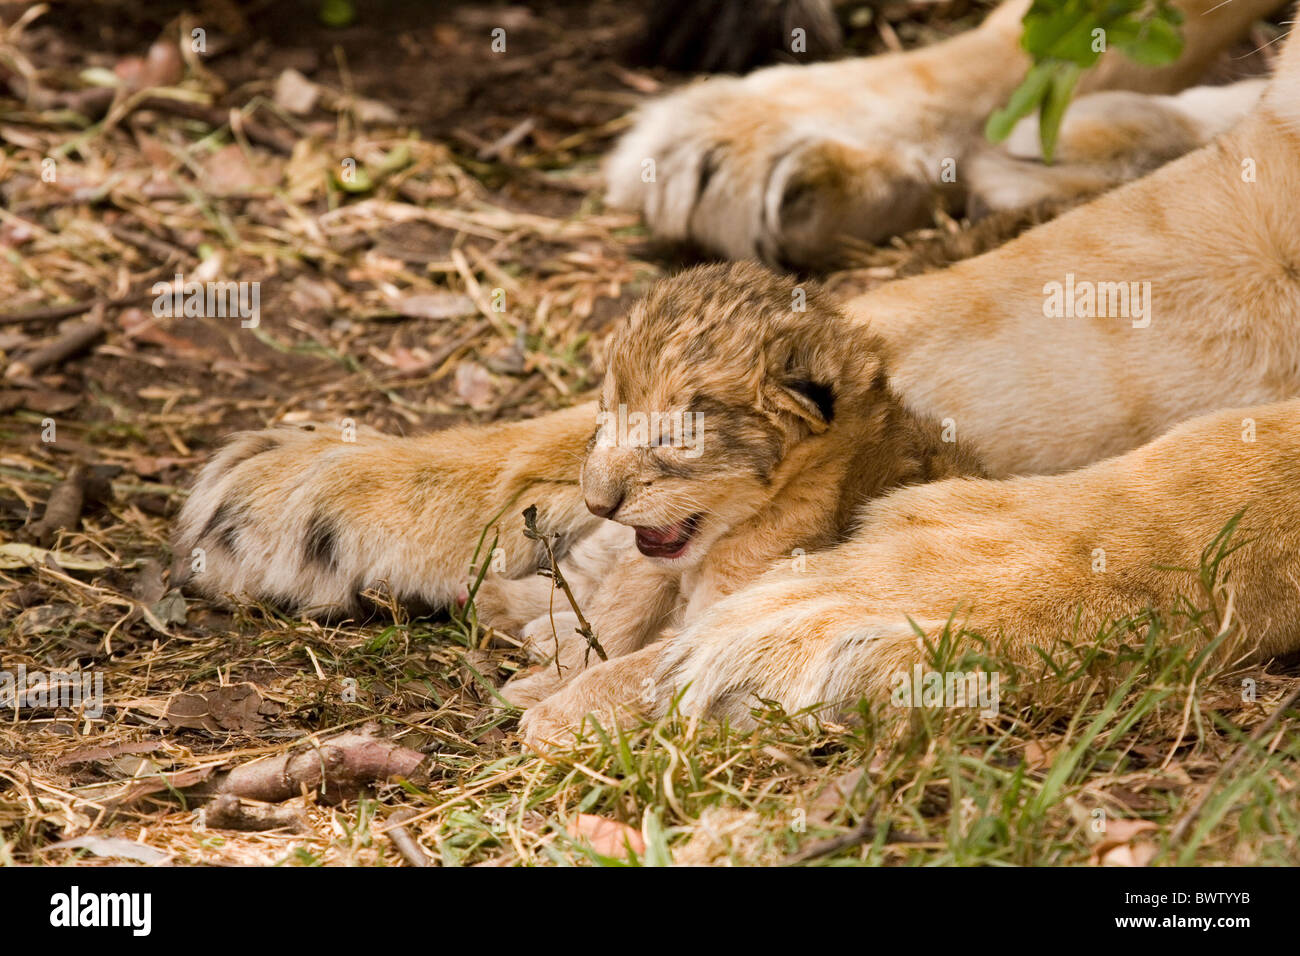 Tiere Säugetiere Katzen Raubkatzen Masai Mara Kenia Afrika afrikanische  Löwe Panthera Panthera Leo jungen baby Babys Mutter und baby  Stockfotografie - Alamy